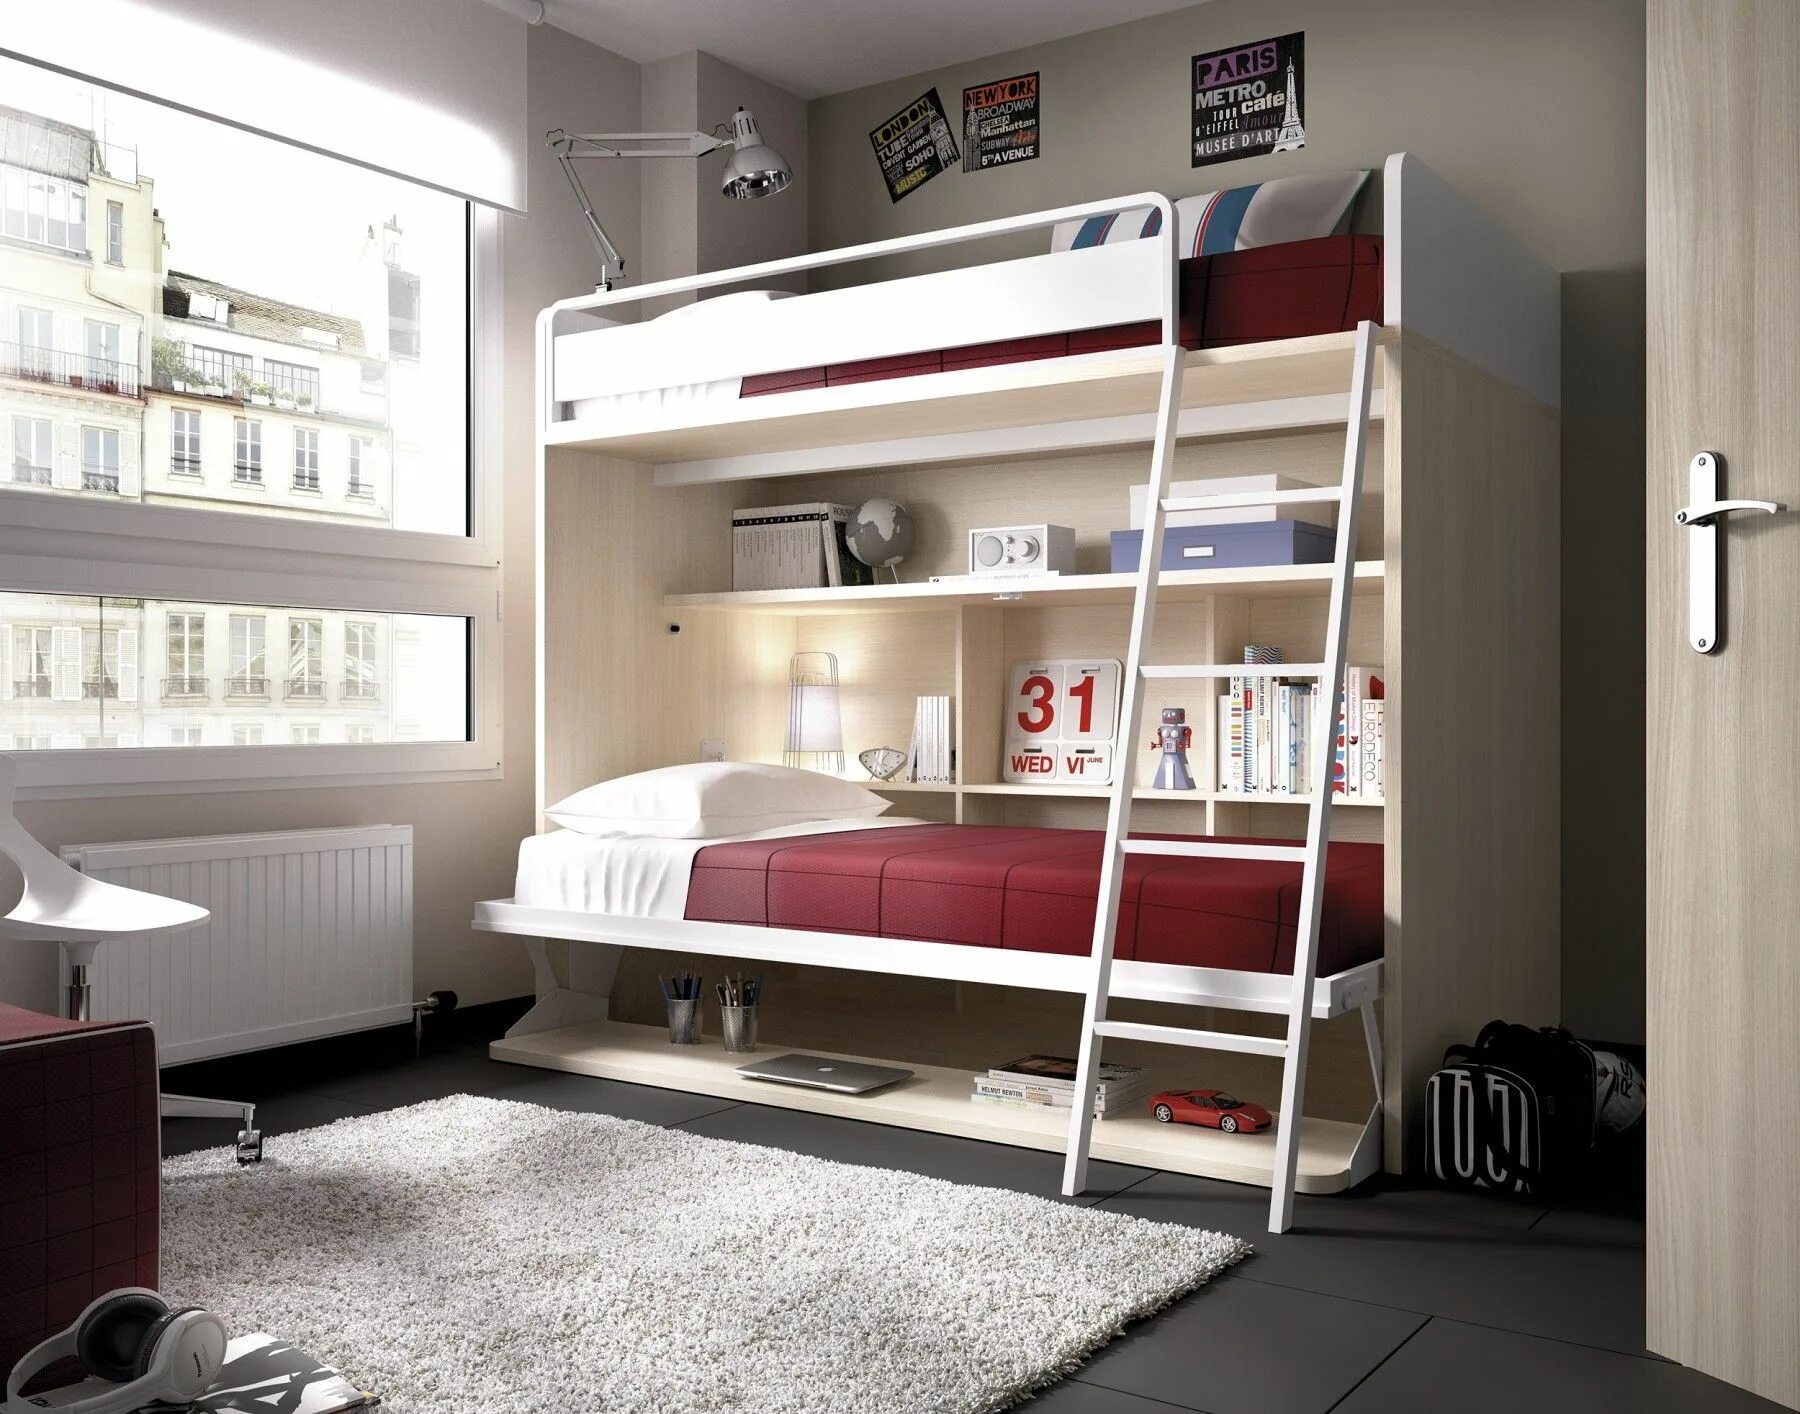 Двухместная комната. Икеа двухъярусные кровати трансформеры. Istikbal двухъярусная кровать. Двухэтажная кровать для подростков. Интерьер детской с двухъярусной кроватью.